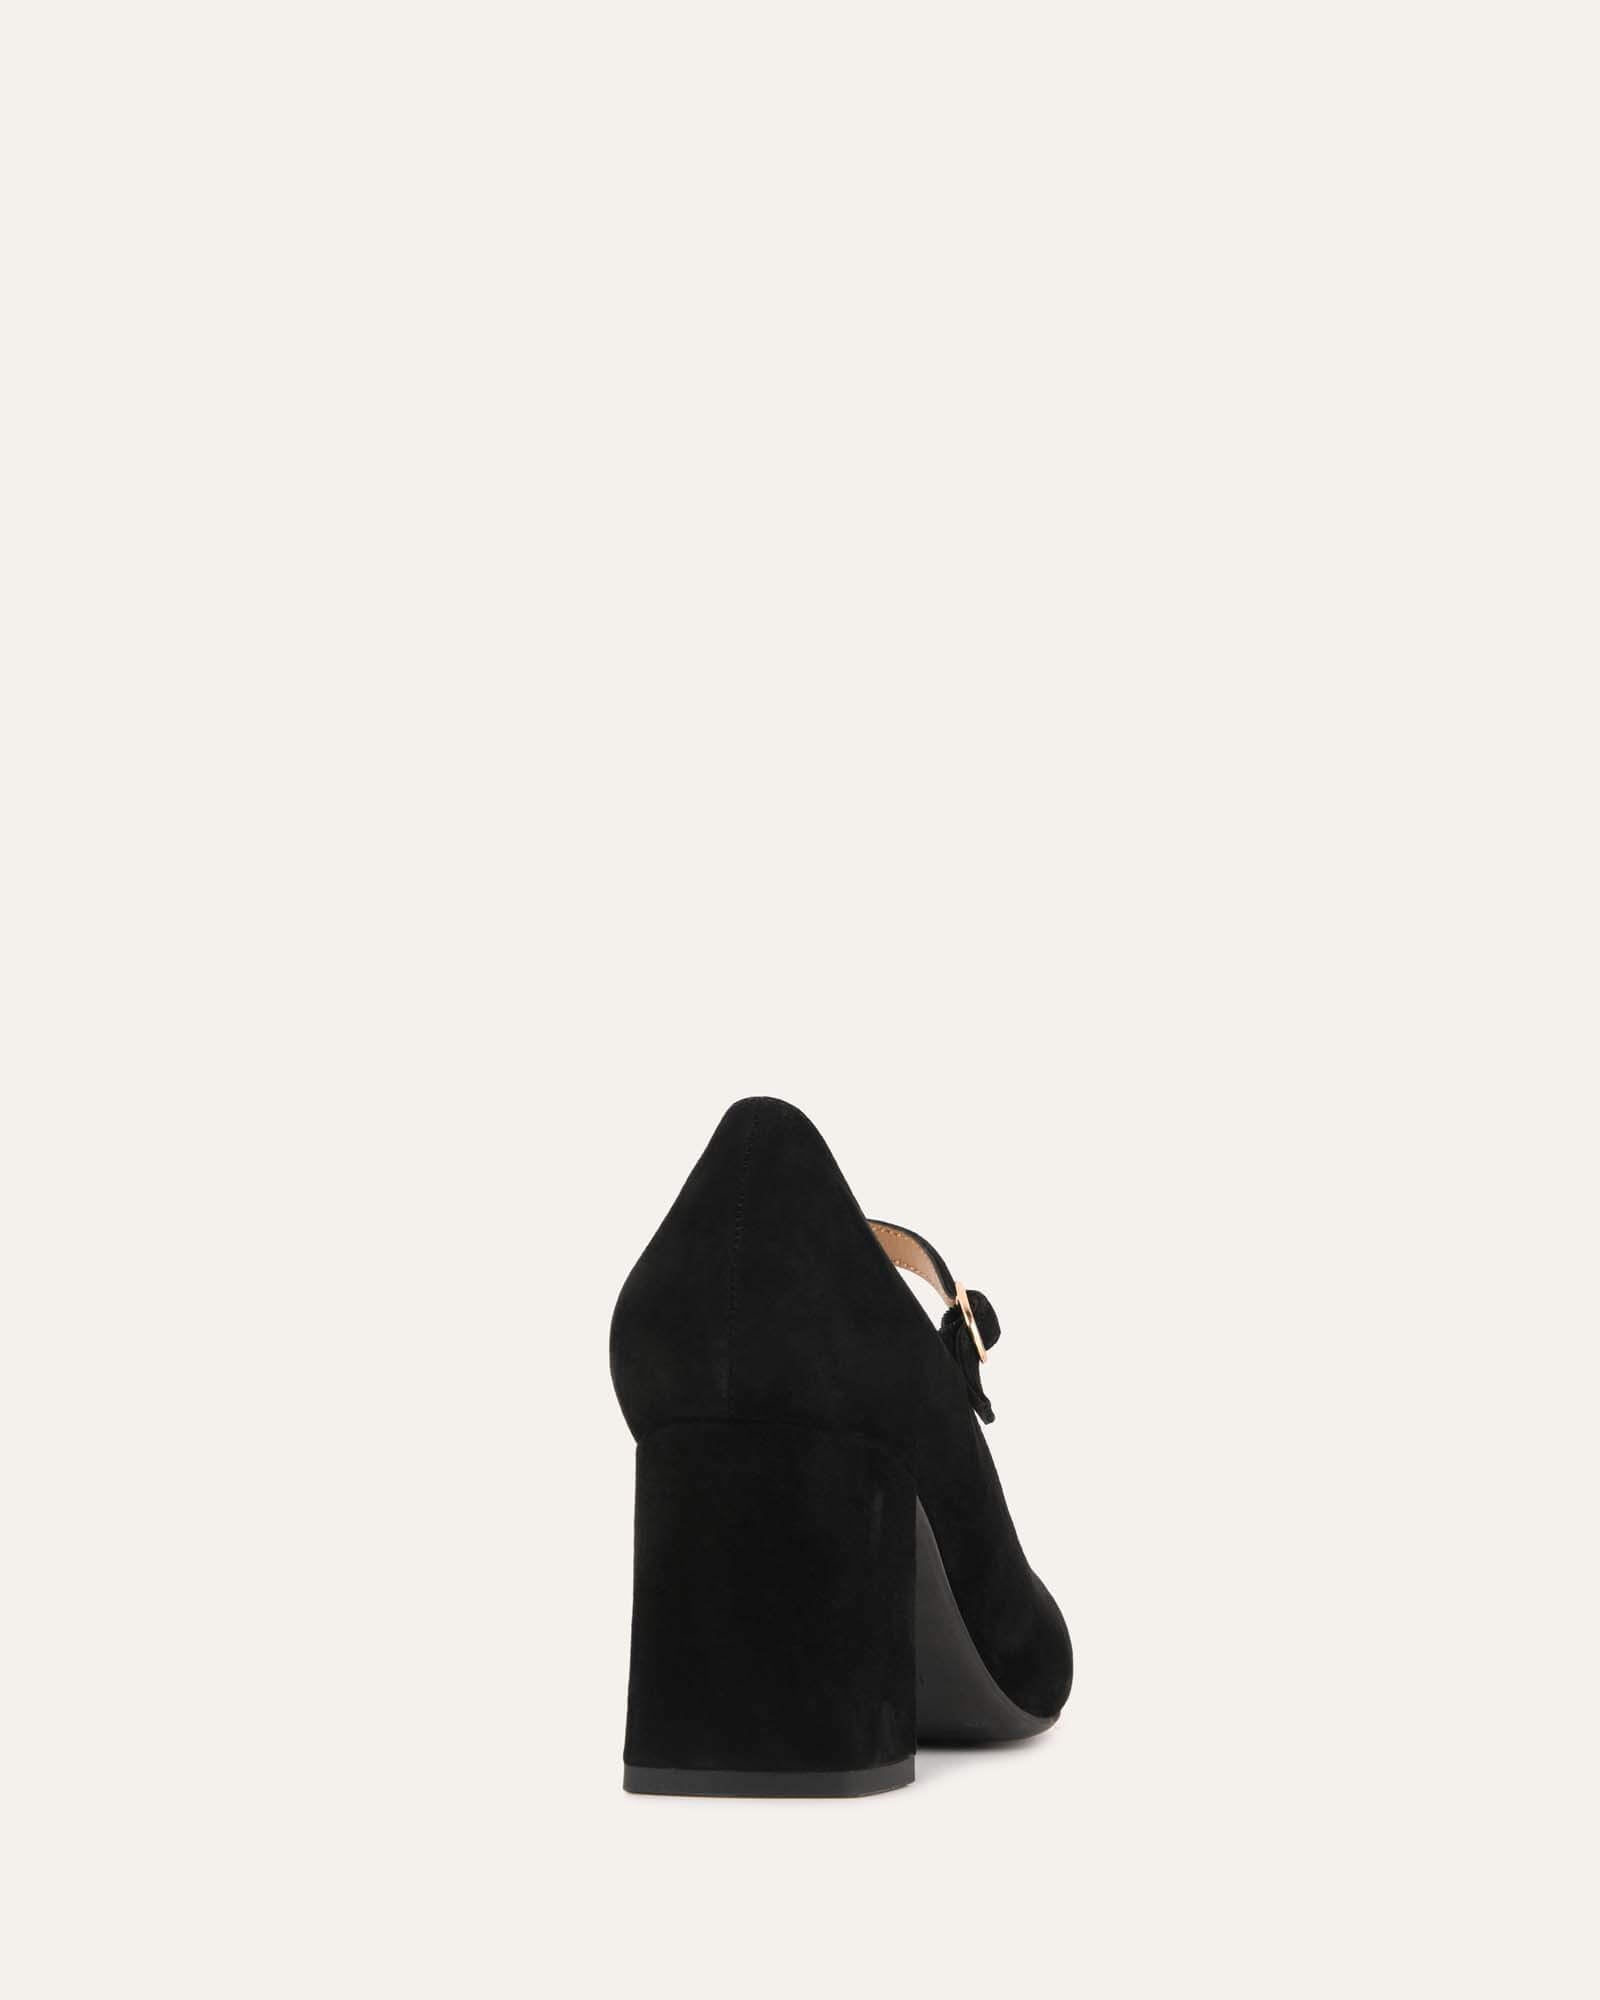 Women Black Solid Pumps Heels, Size: 3-8 at Rs 600/pair in Gurugram | ID:  22115863212